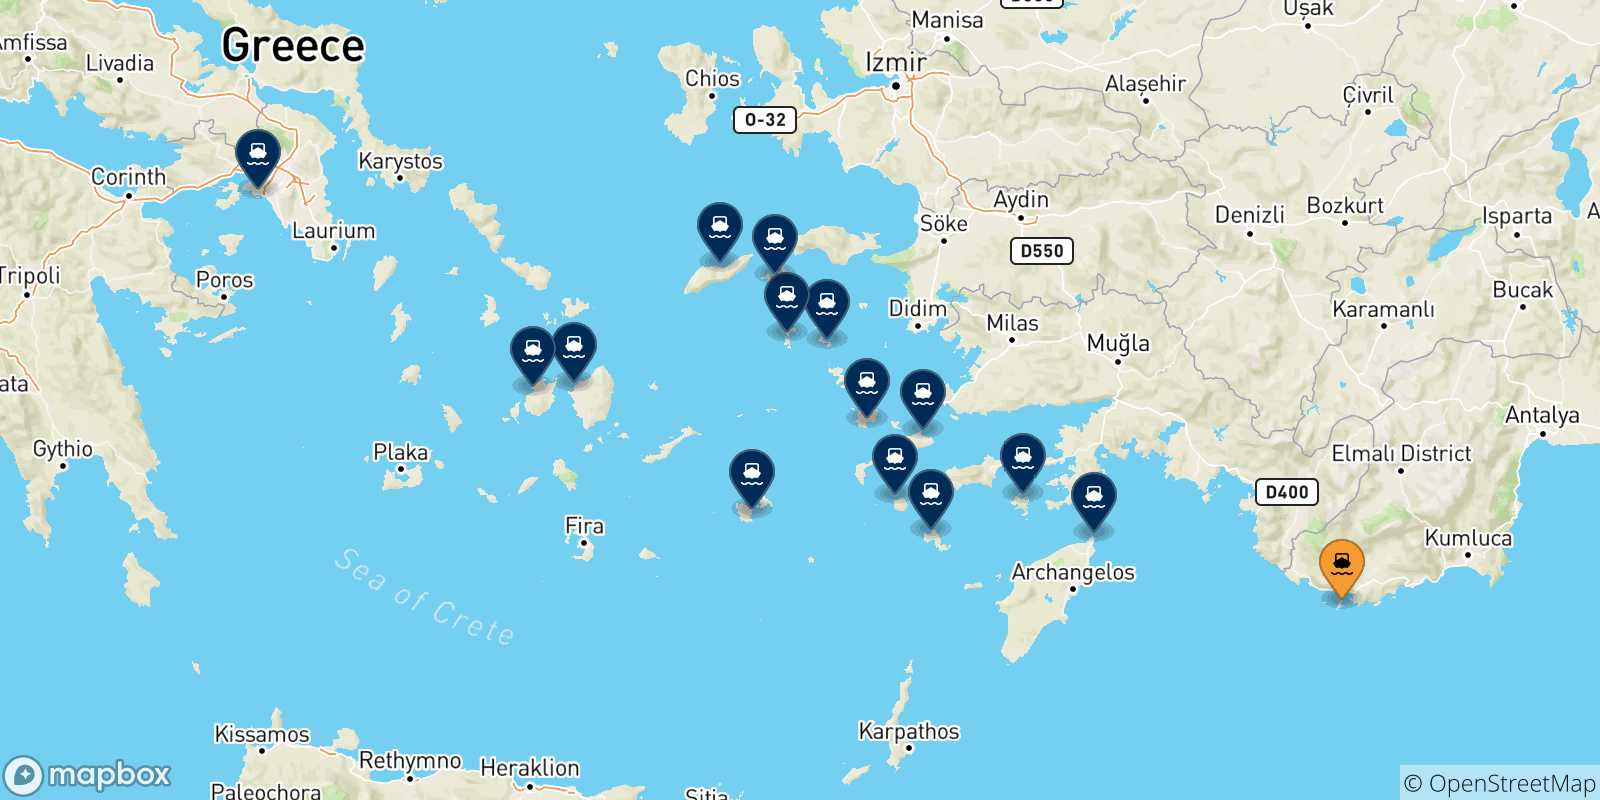 Mappa delle possibili rotte tra Kastellorizo e la Grecia